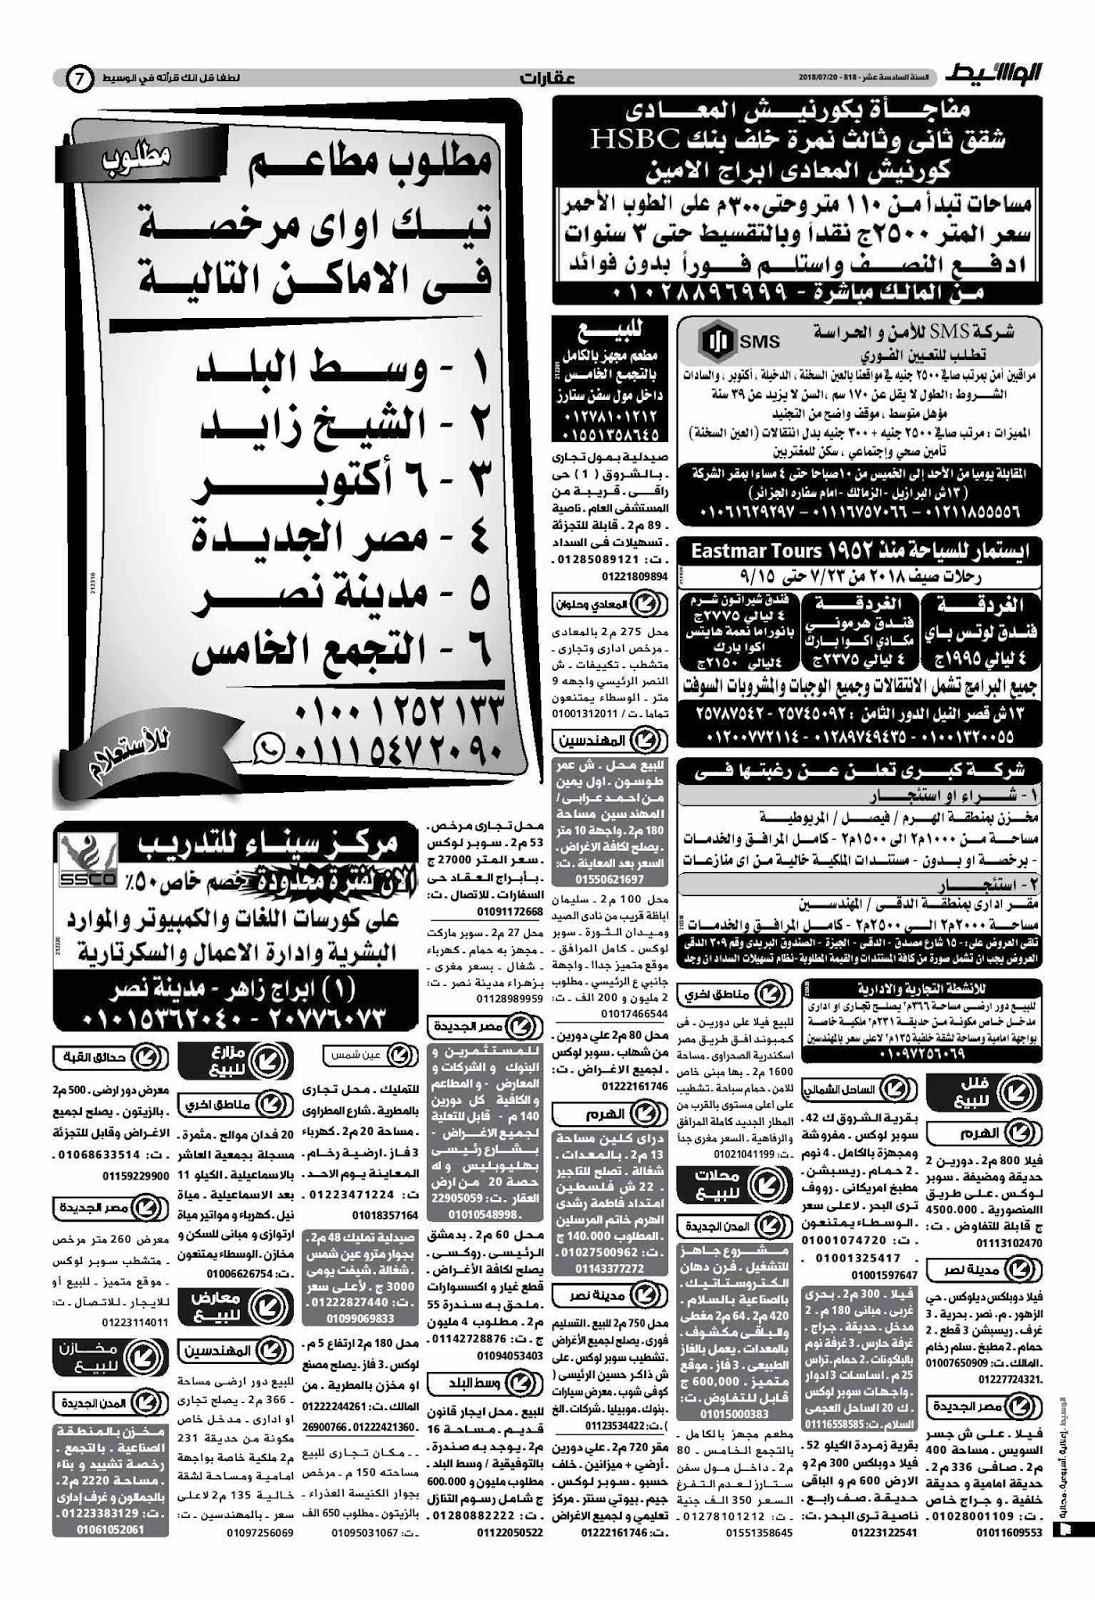 وظائف الوسيط مصر الجمعة 20 يوليو 2018 واعلانات الوسيط